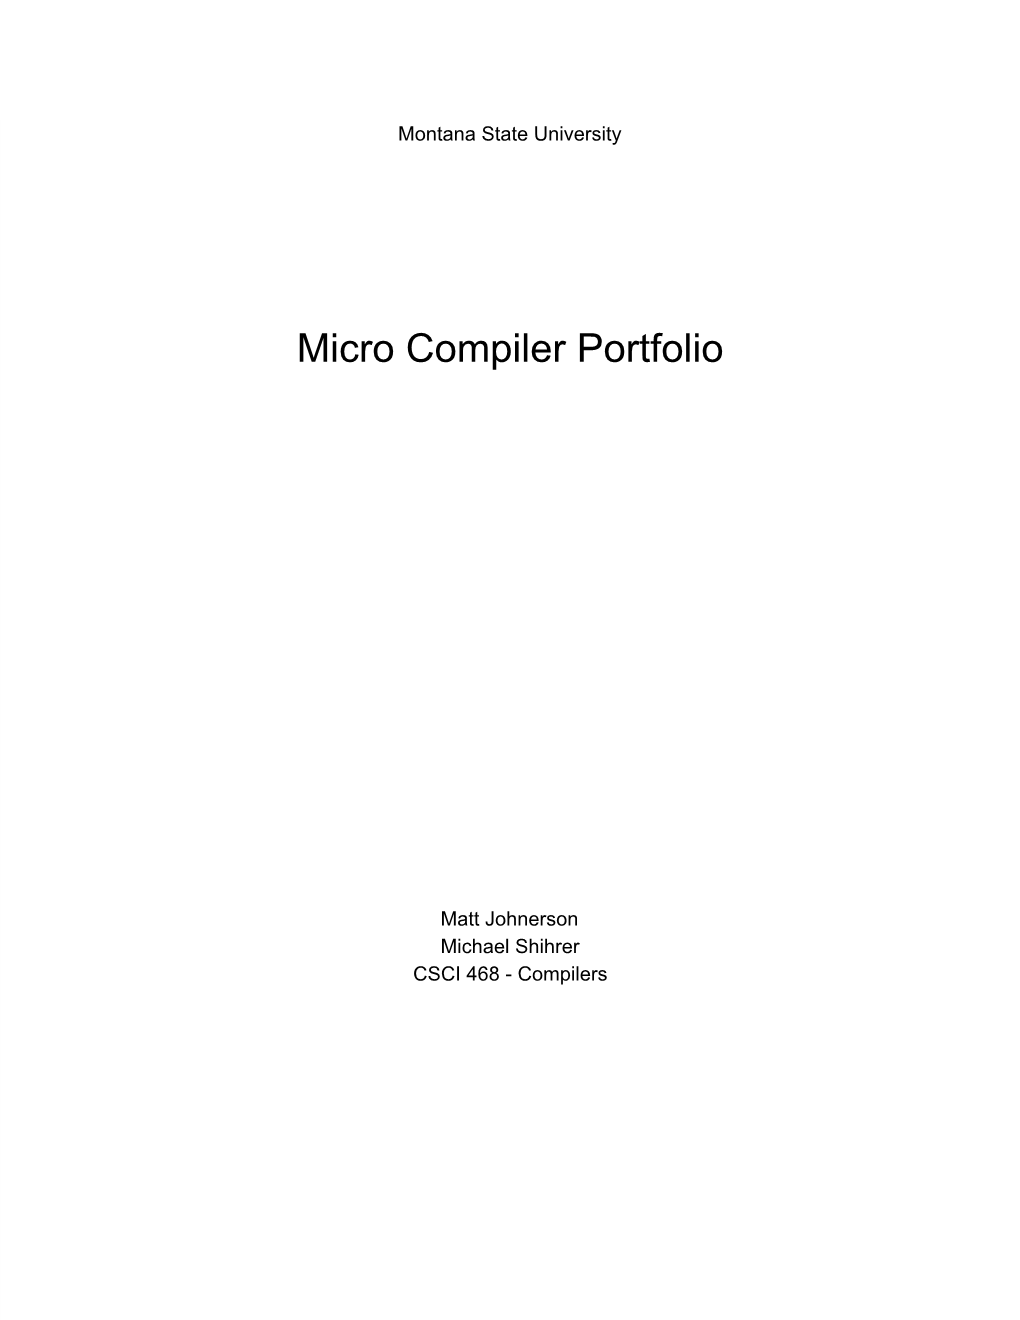 Micro Compiler Portfolio